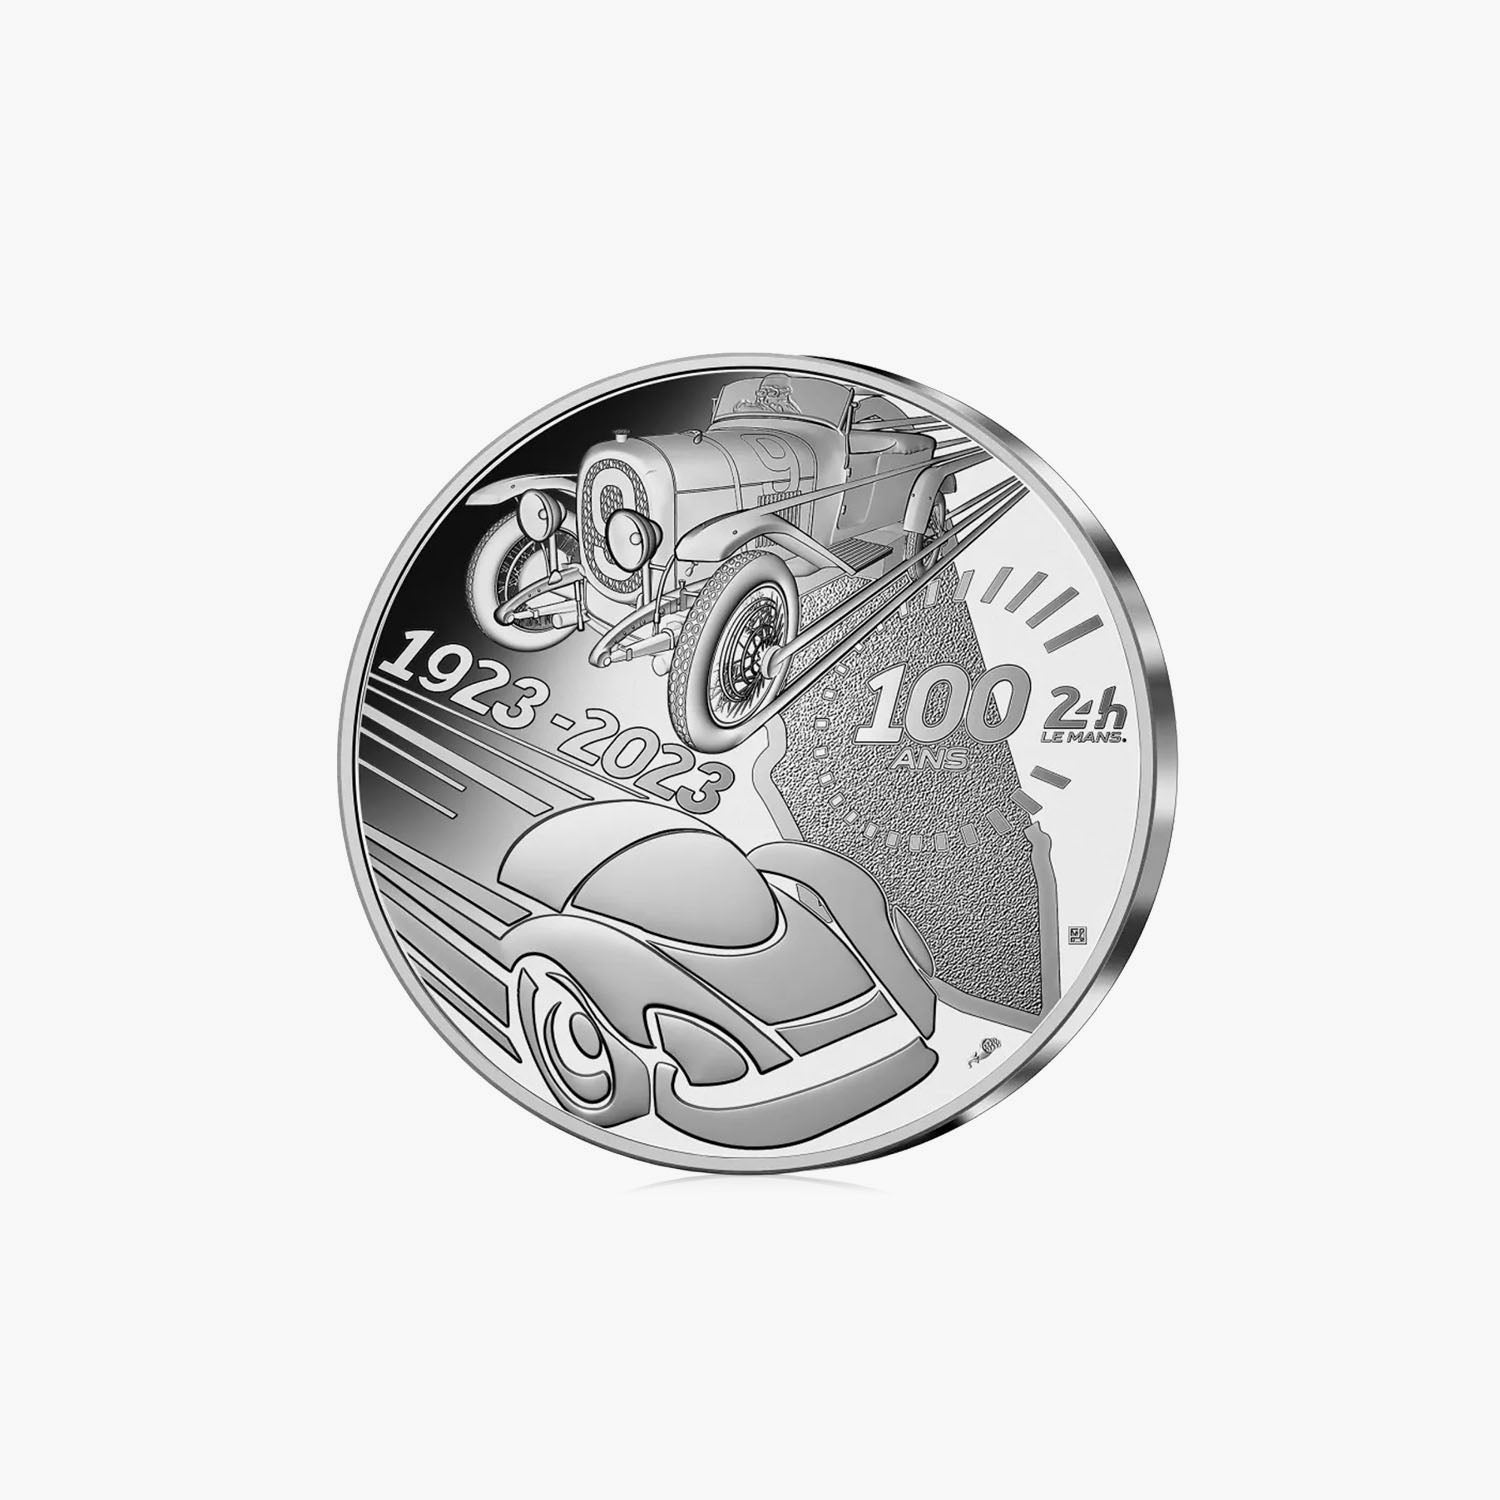 ル・マン24時間レース100周年記念 10ユーロ銀貨